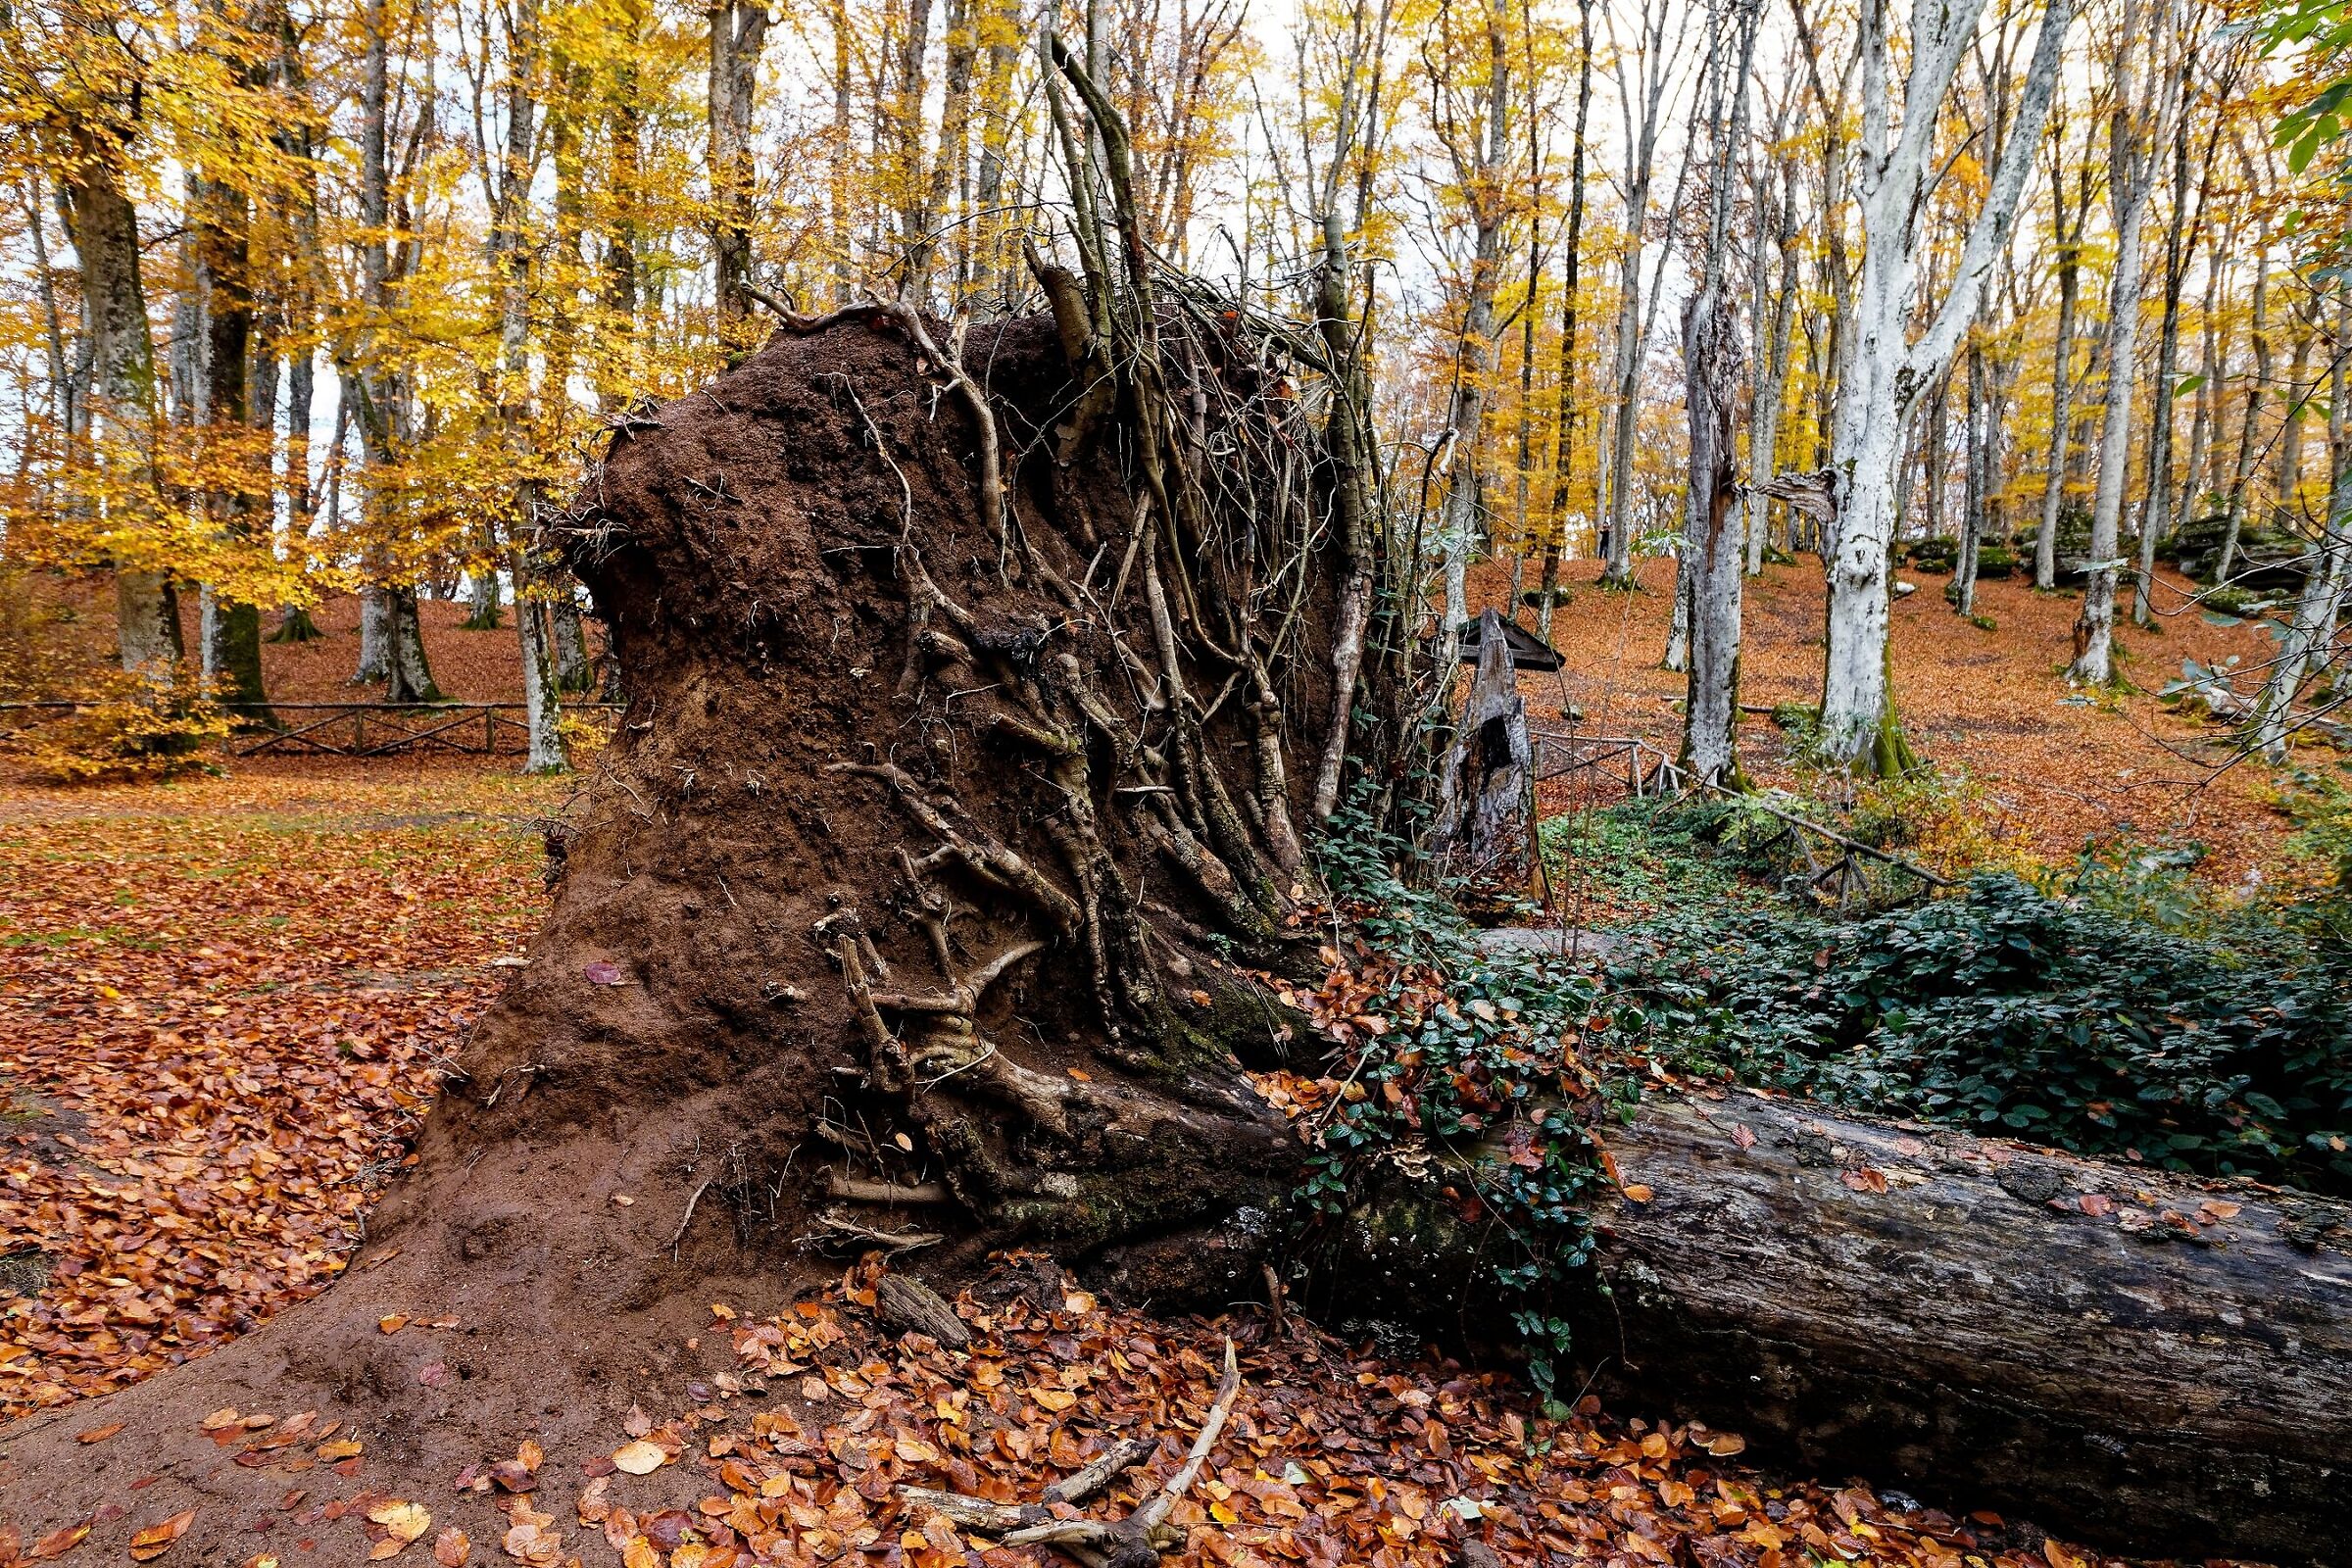 The fallen tree...